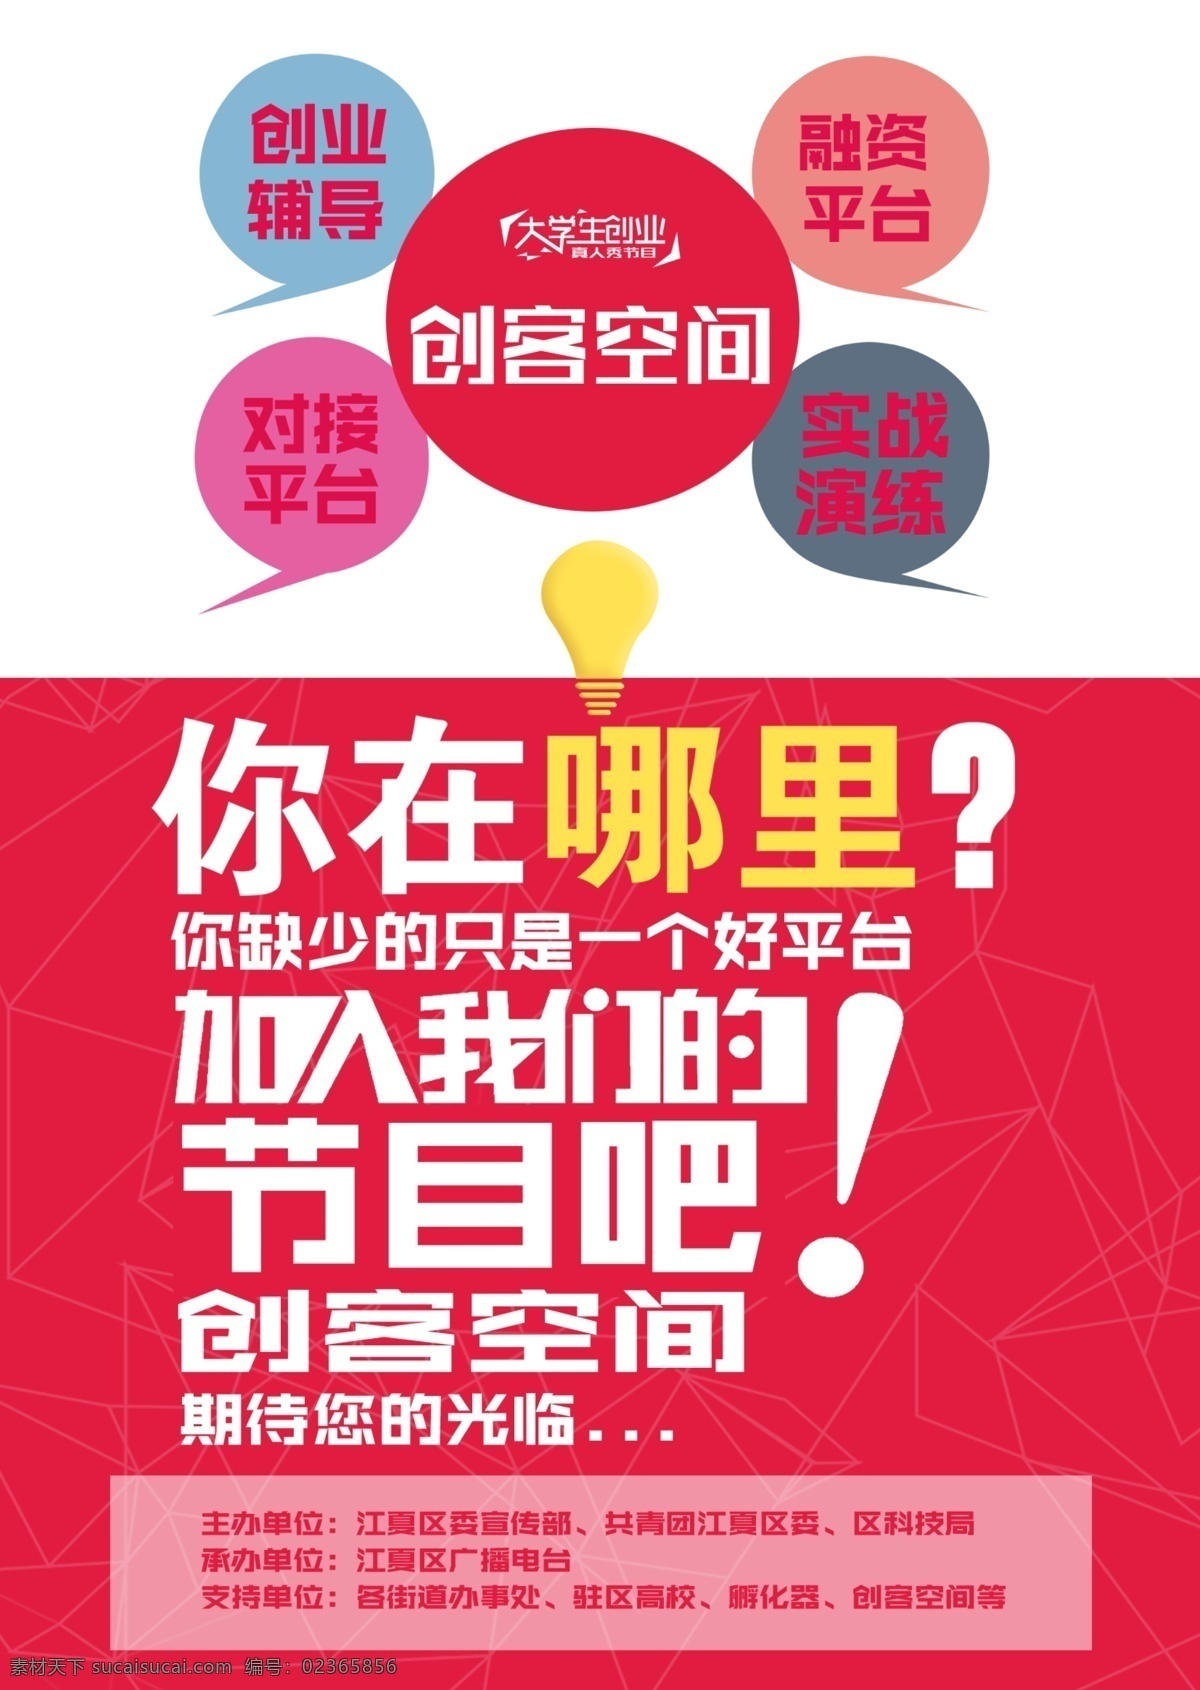 江夏 电视台 宣传单 反面 创客空间 海报 扁平化 红色